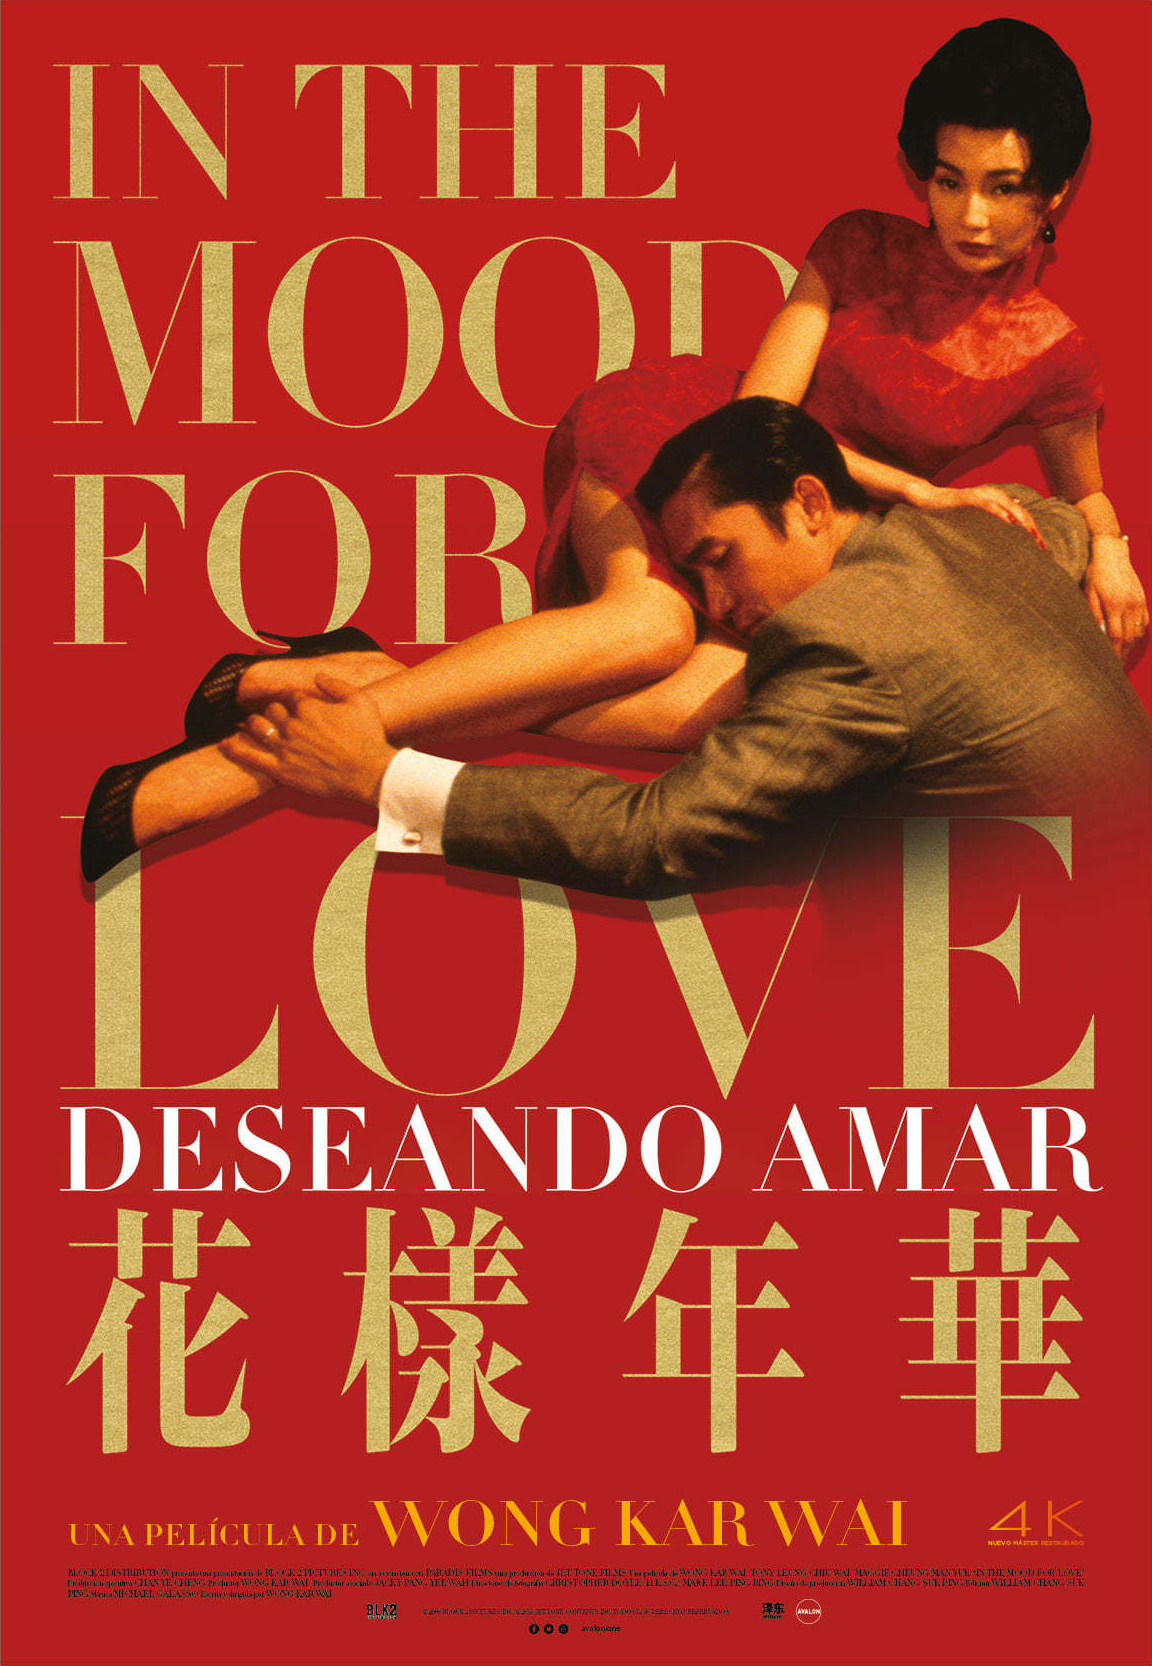 《花樣年華》In the Mood for Love (2000)，美國原版雙面海報(20周年B款)(日期字樣可能與圖片不同)，尺寸：27 x 40 吋（68.58 X 101.6 公分高），價格是3600元--dd-hub